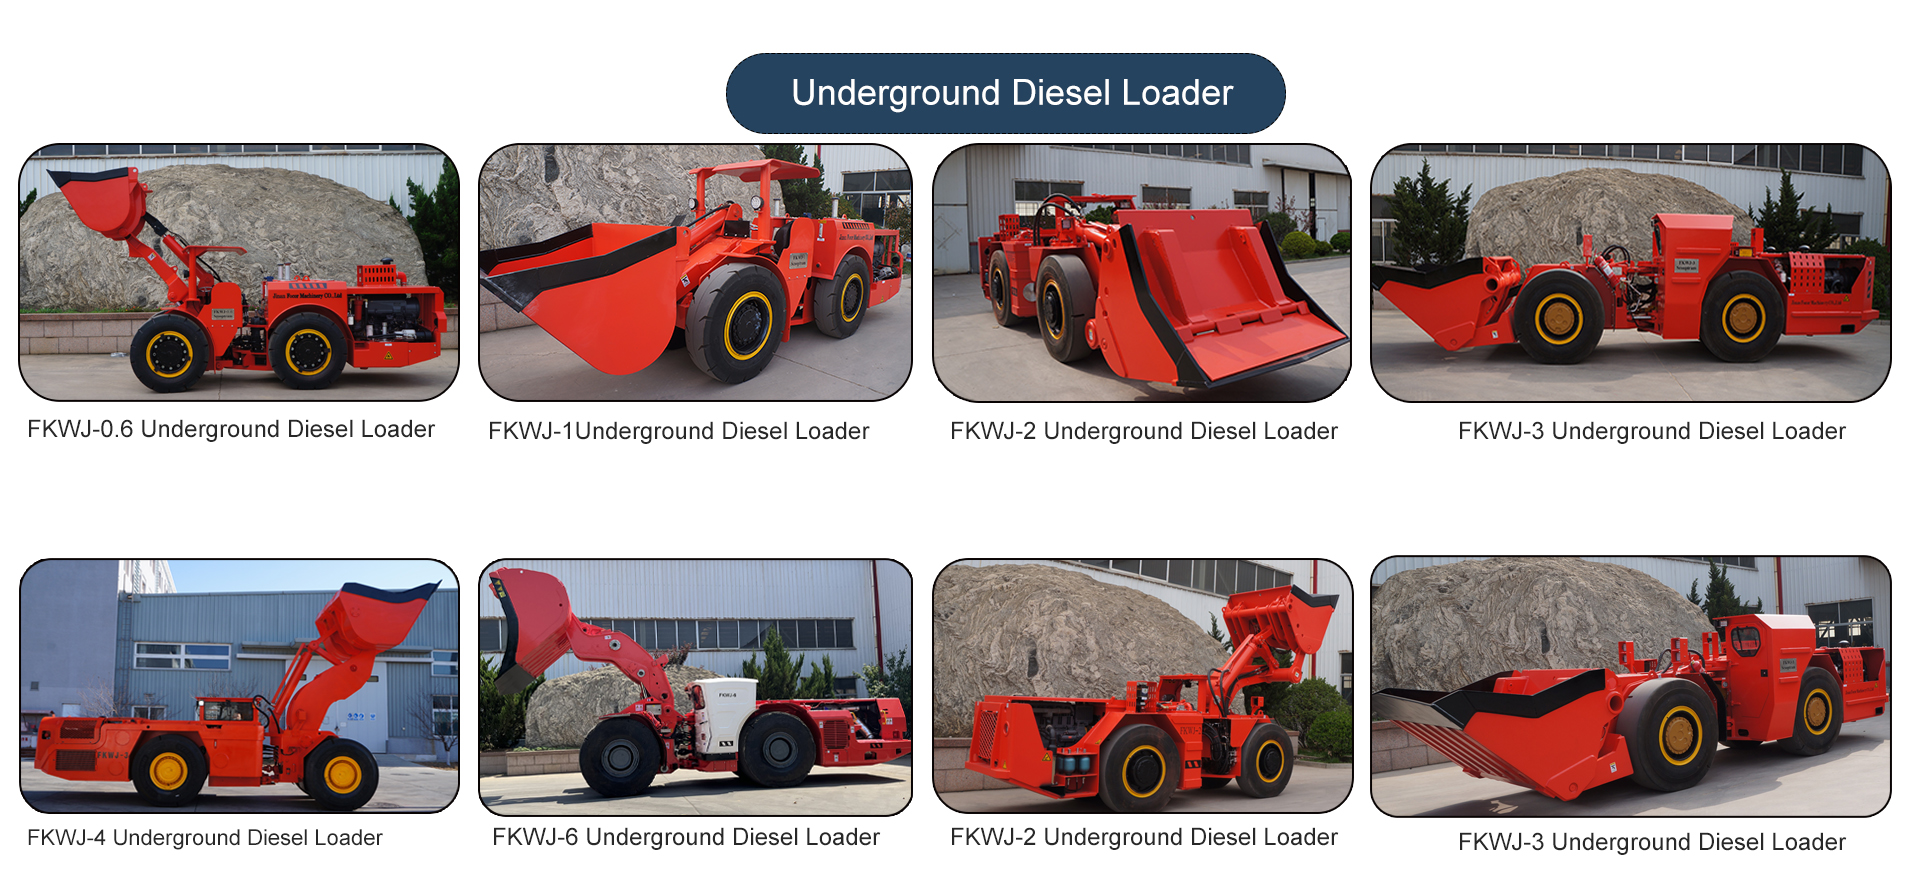 underground diesel loader.jpg